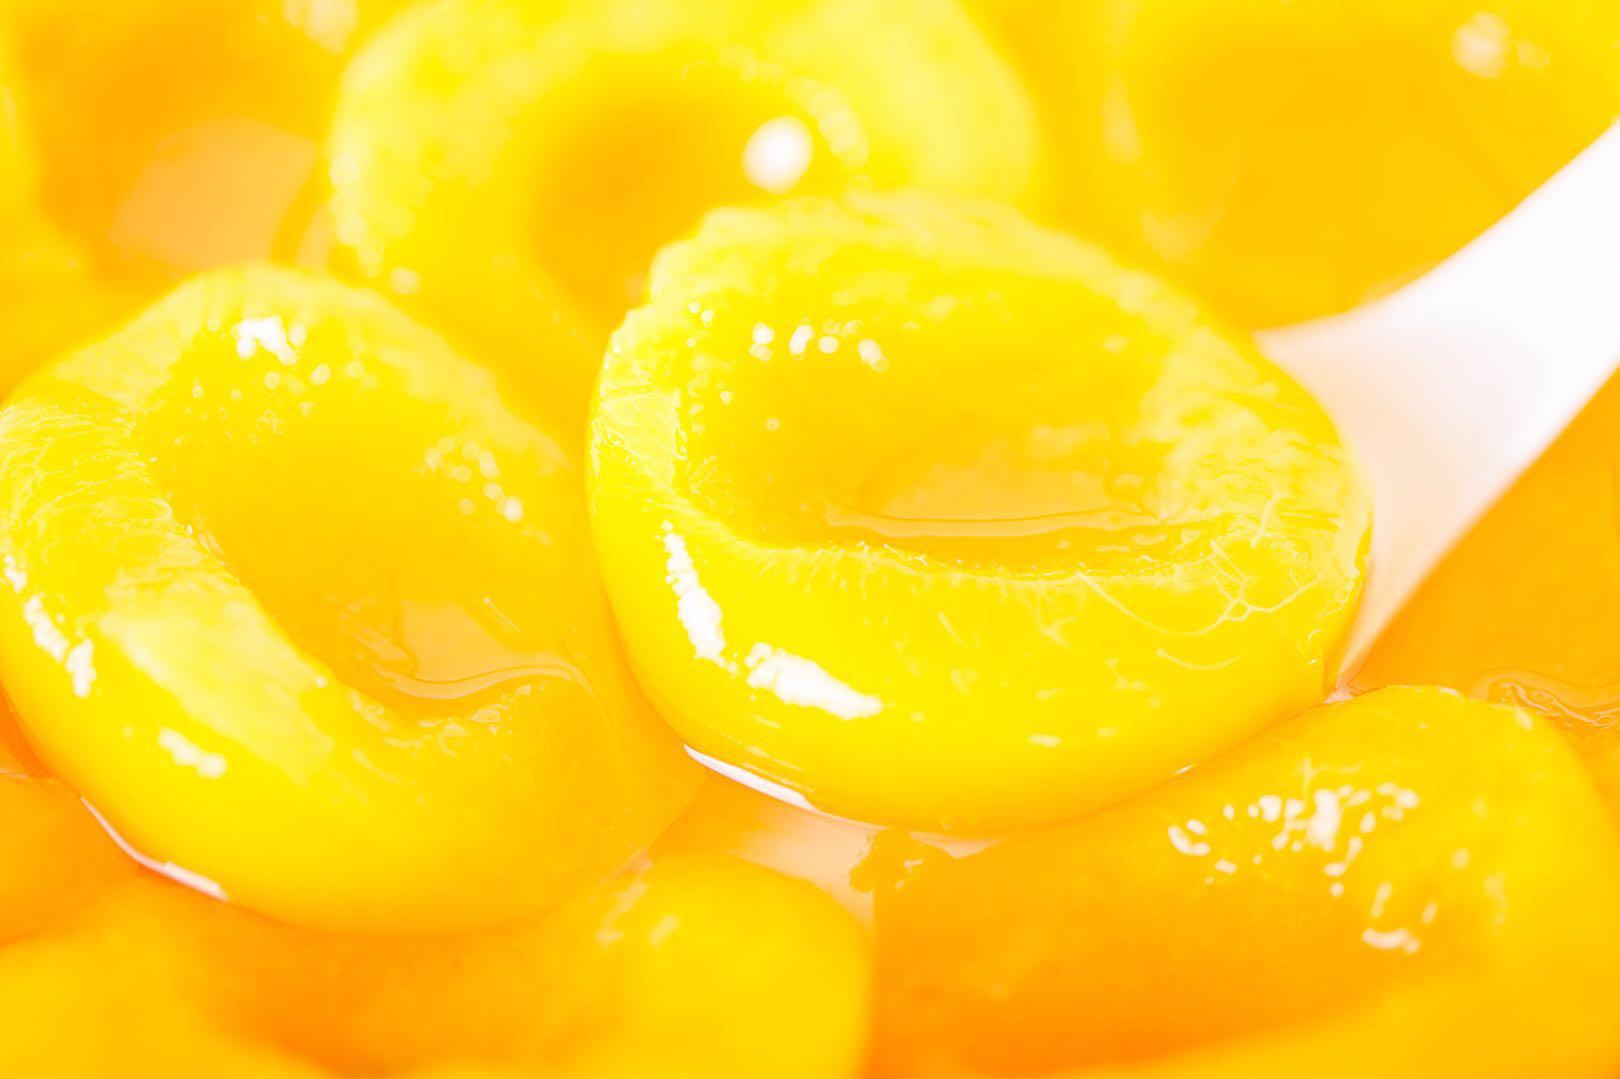 黄桃罐头的营养价值